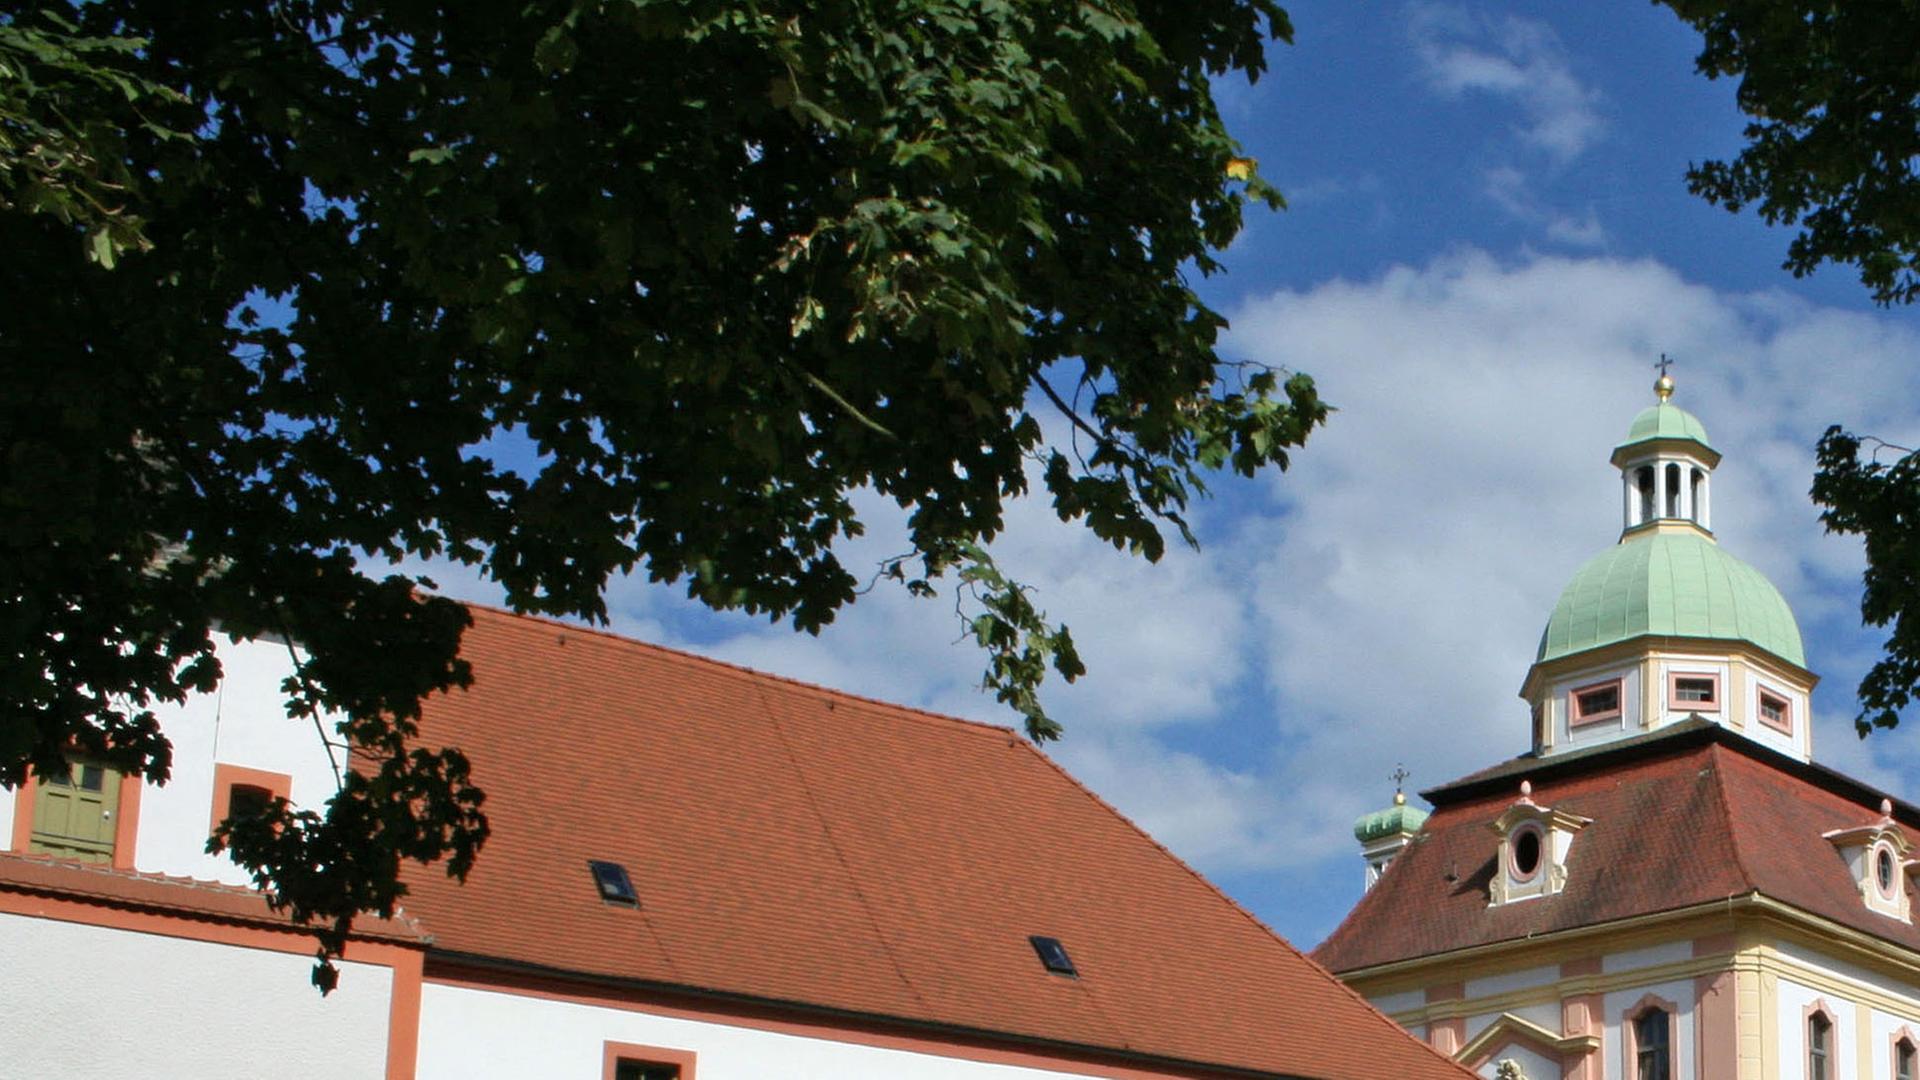 Das Kloster St. Marienthal im ostsächsischen Ostritz.